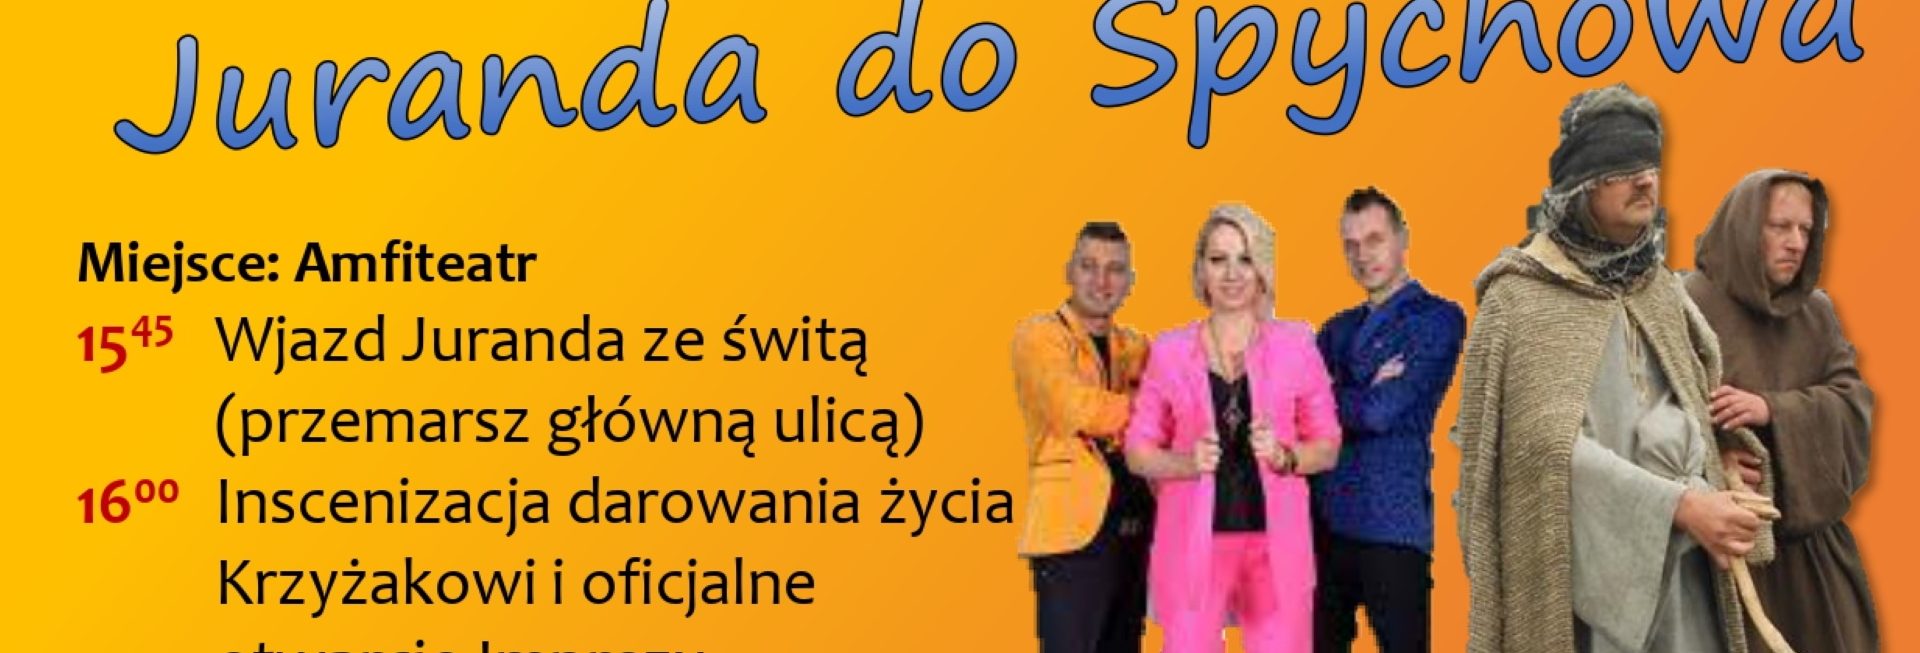 Plakat zapraszający w sobotę 8 lipca 2023 r. do Spychowa na 21. edycję Powrotu JURANDA DO SPYCHOWA Spychowo 2023.